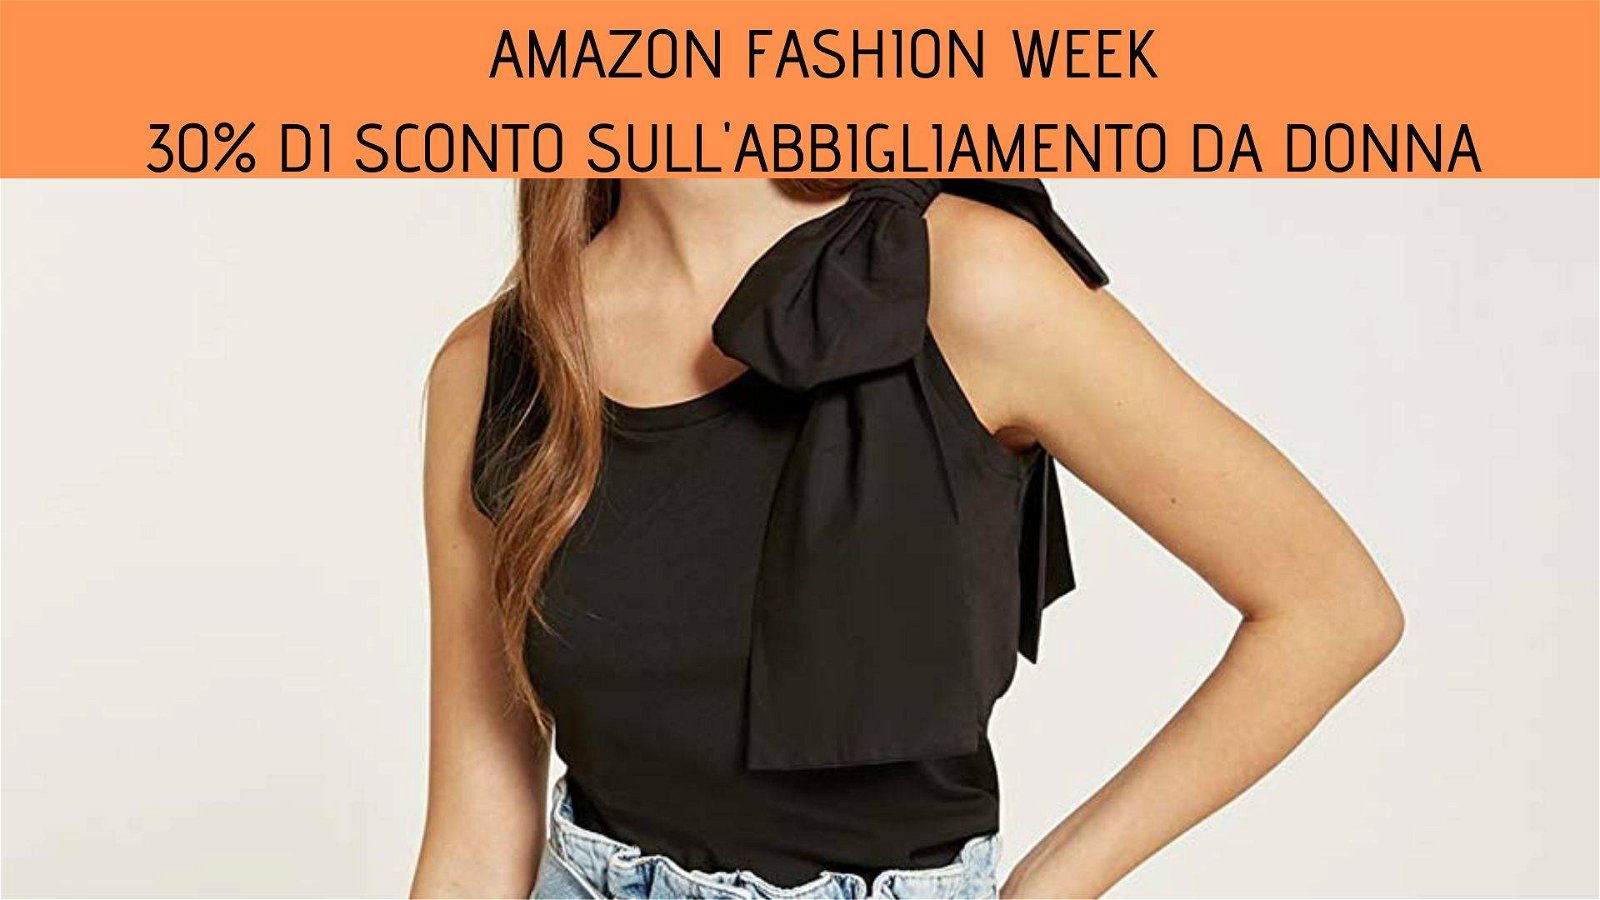 Immagine di 30% di sconto sull'abbigliamento da donna Oltre, Motivi e Fiorella Rubino per la Amazon Fashion Week